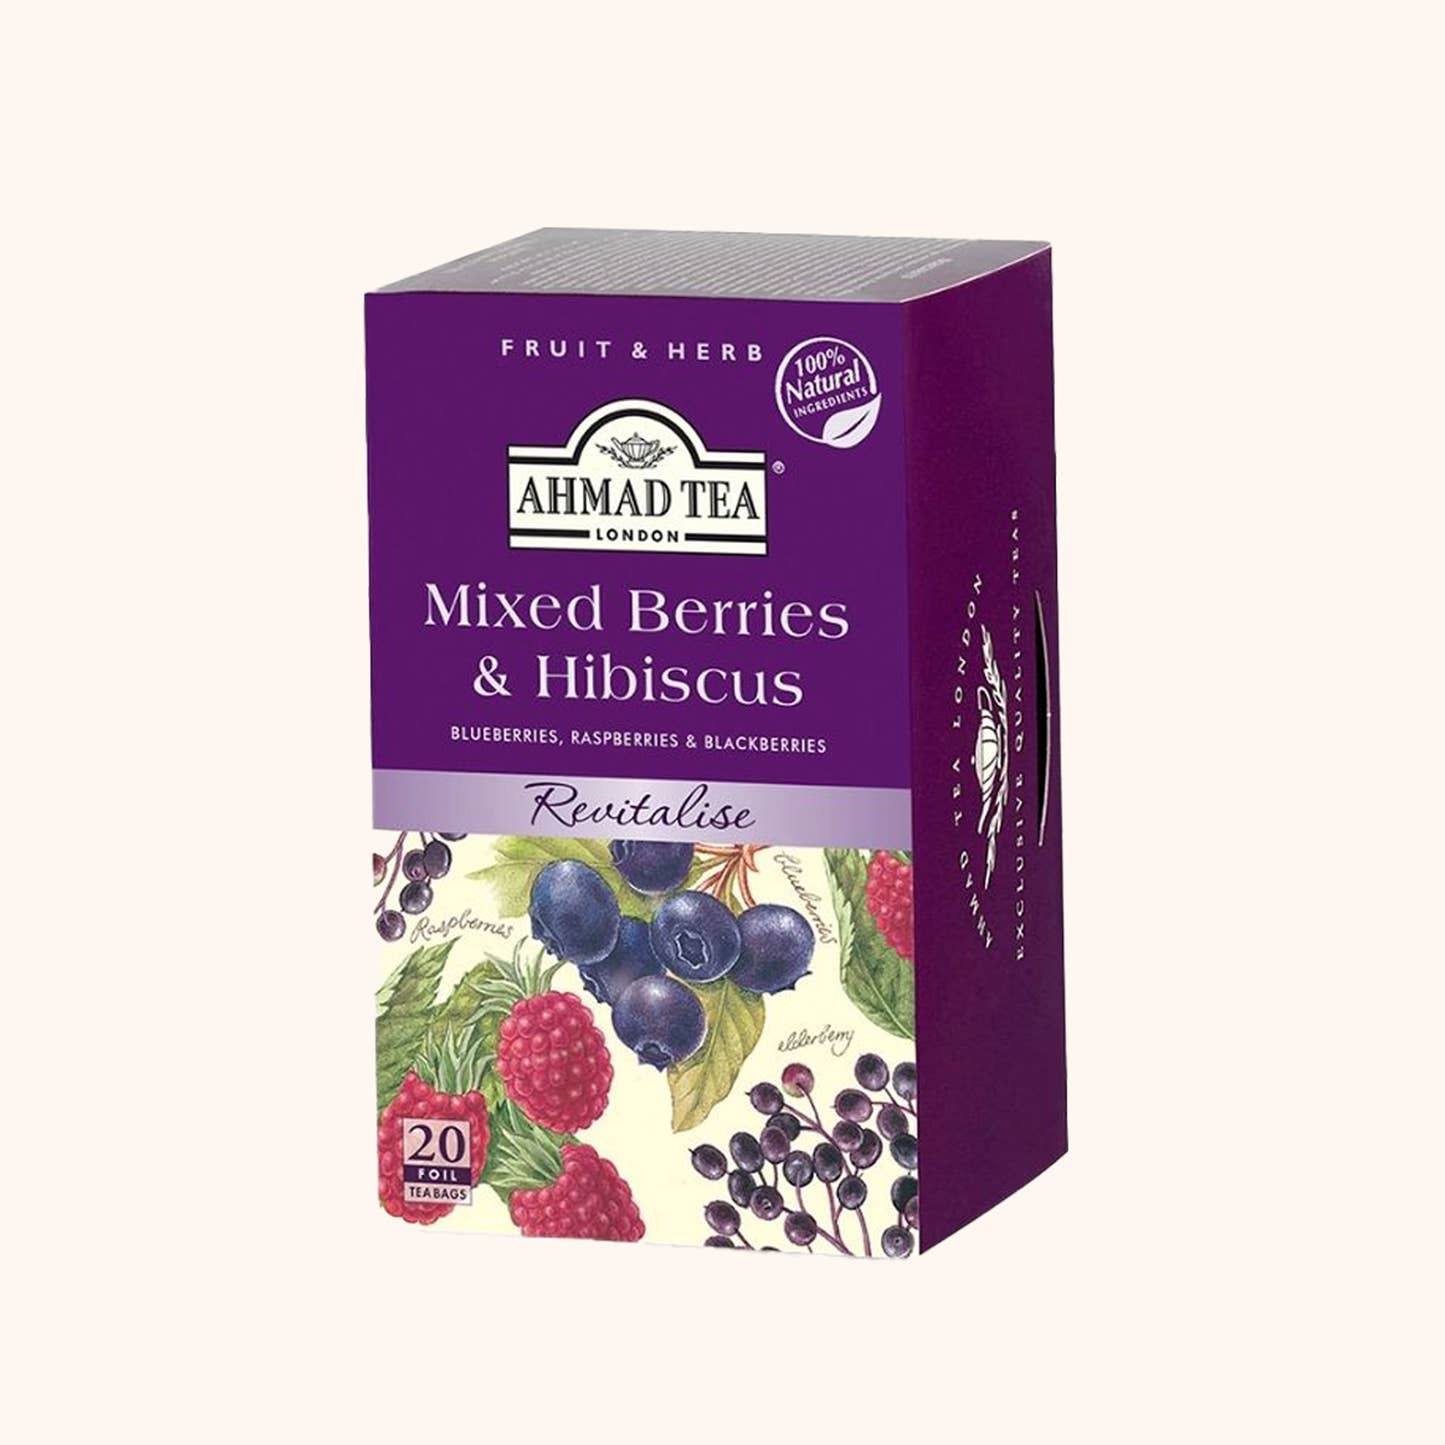 Mixed Berries & Hibiscus